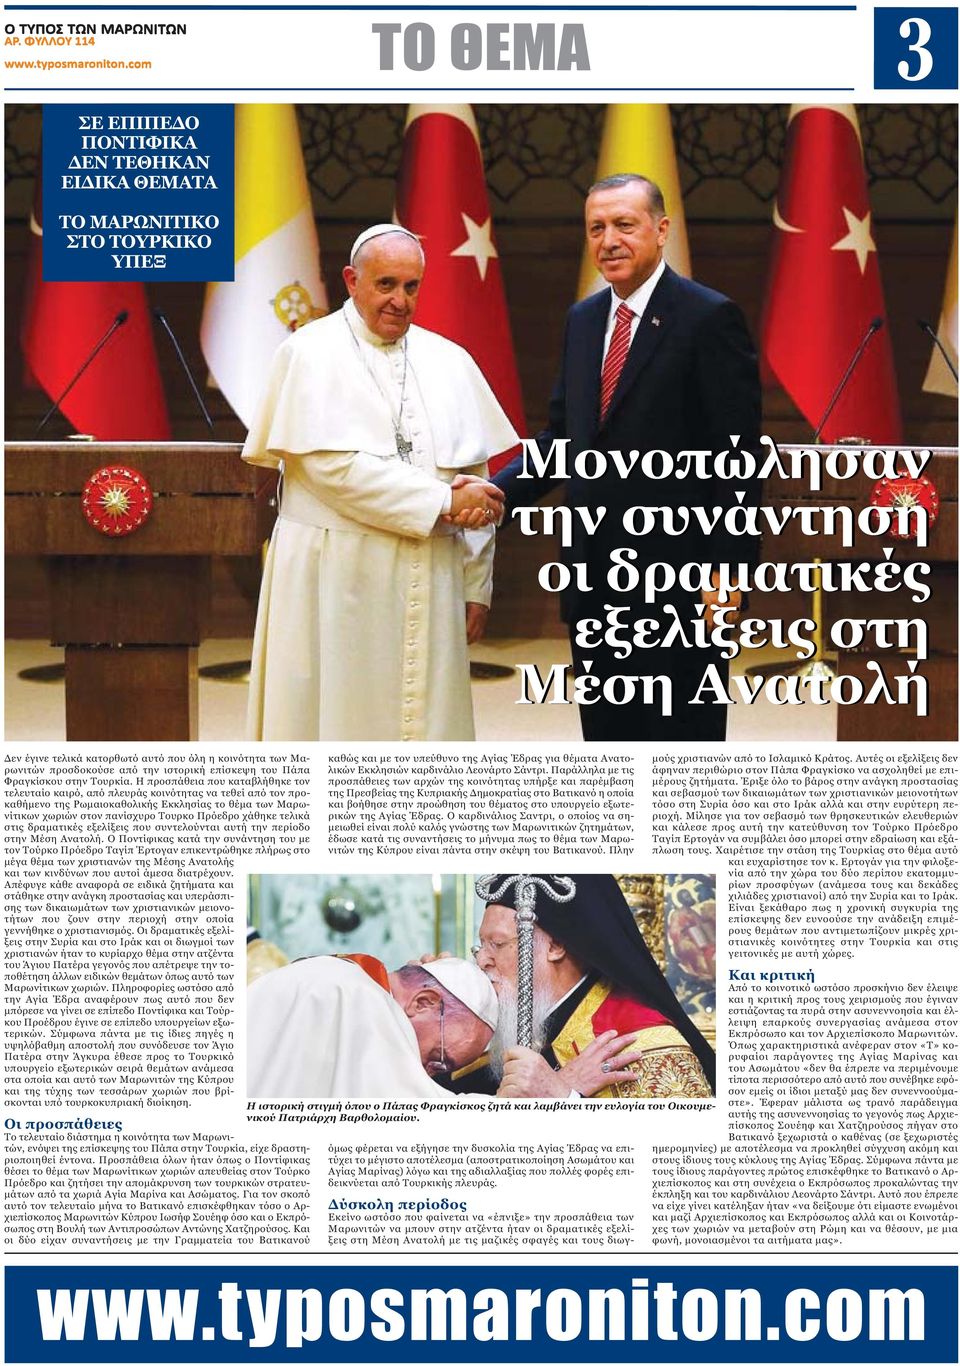 Η προσπάθεια που καταβλήθηκε τον τελευταίο καιρό, από πλευράς κοινότητας να τεθεί από τον προκαθήμενο της Ρωμαιοκαθολικής Εκκλησίας το θέμα των Μαρωνίτικων χωριών στον πανίσχυρο Τουρκο Πρόεδρο χάθηκε